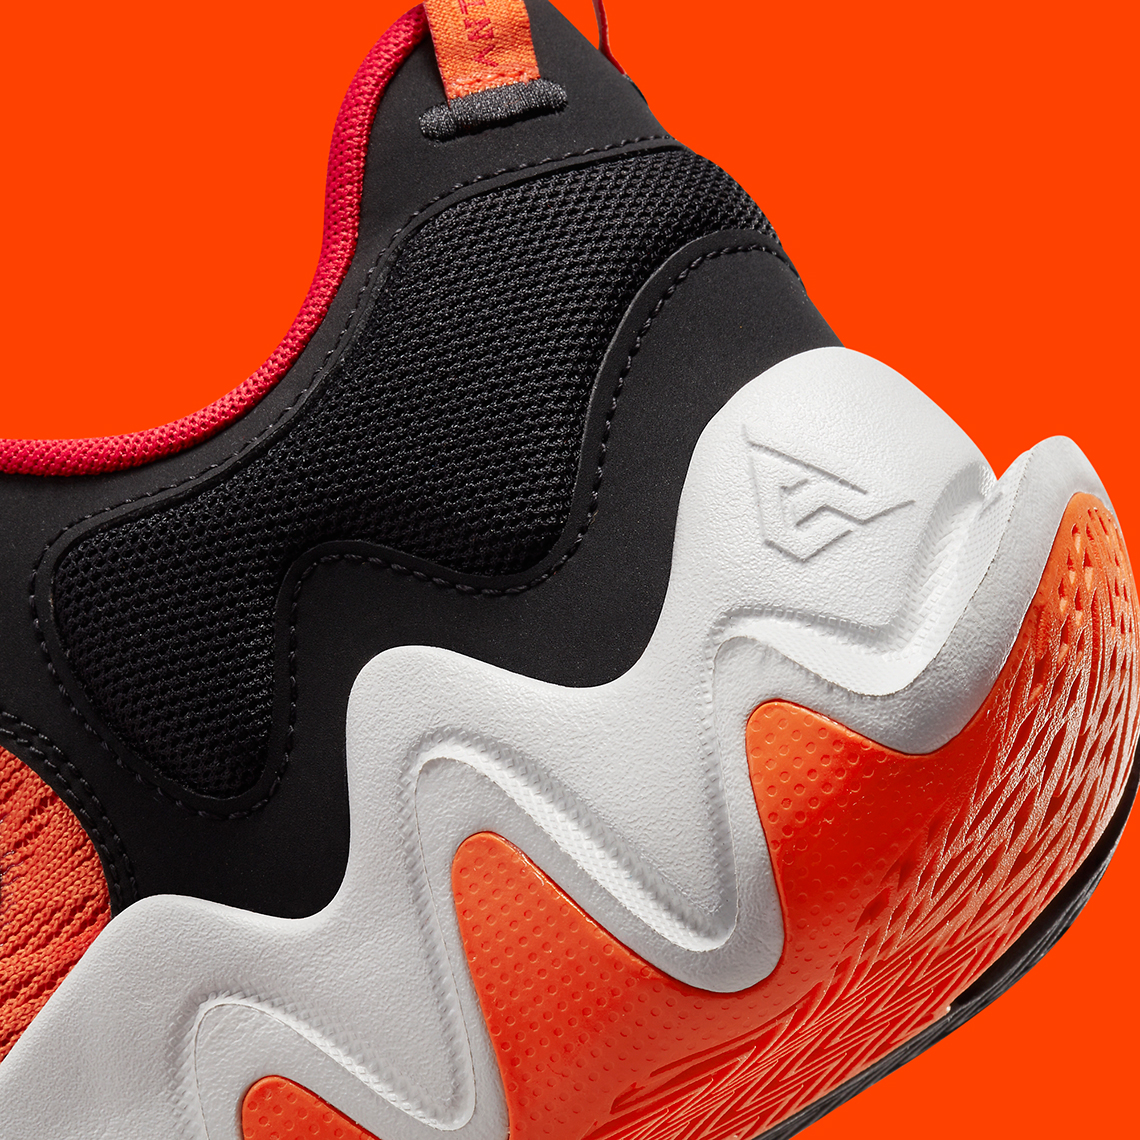 Nike buty Giannis Immortalilty 2 Orange Black Release Date5